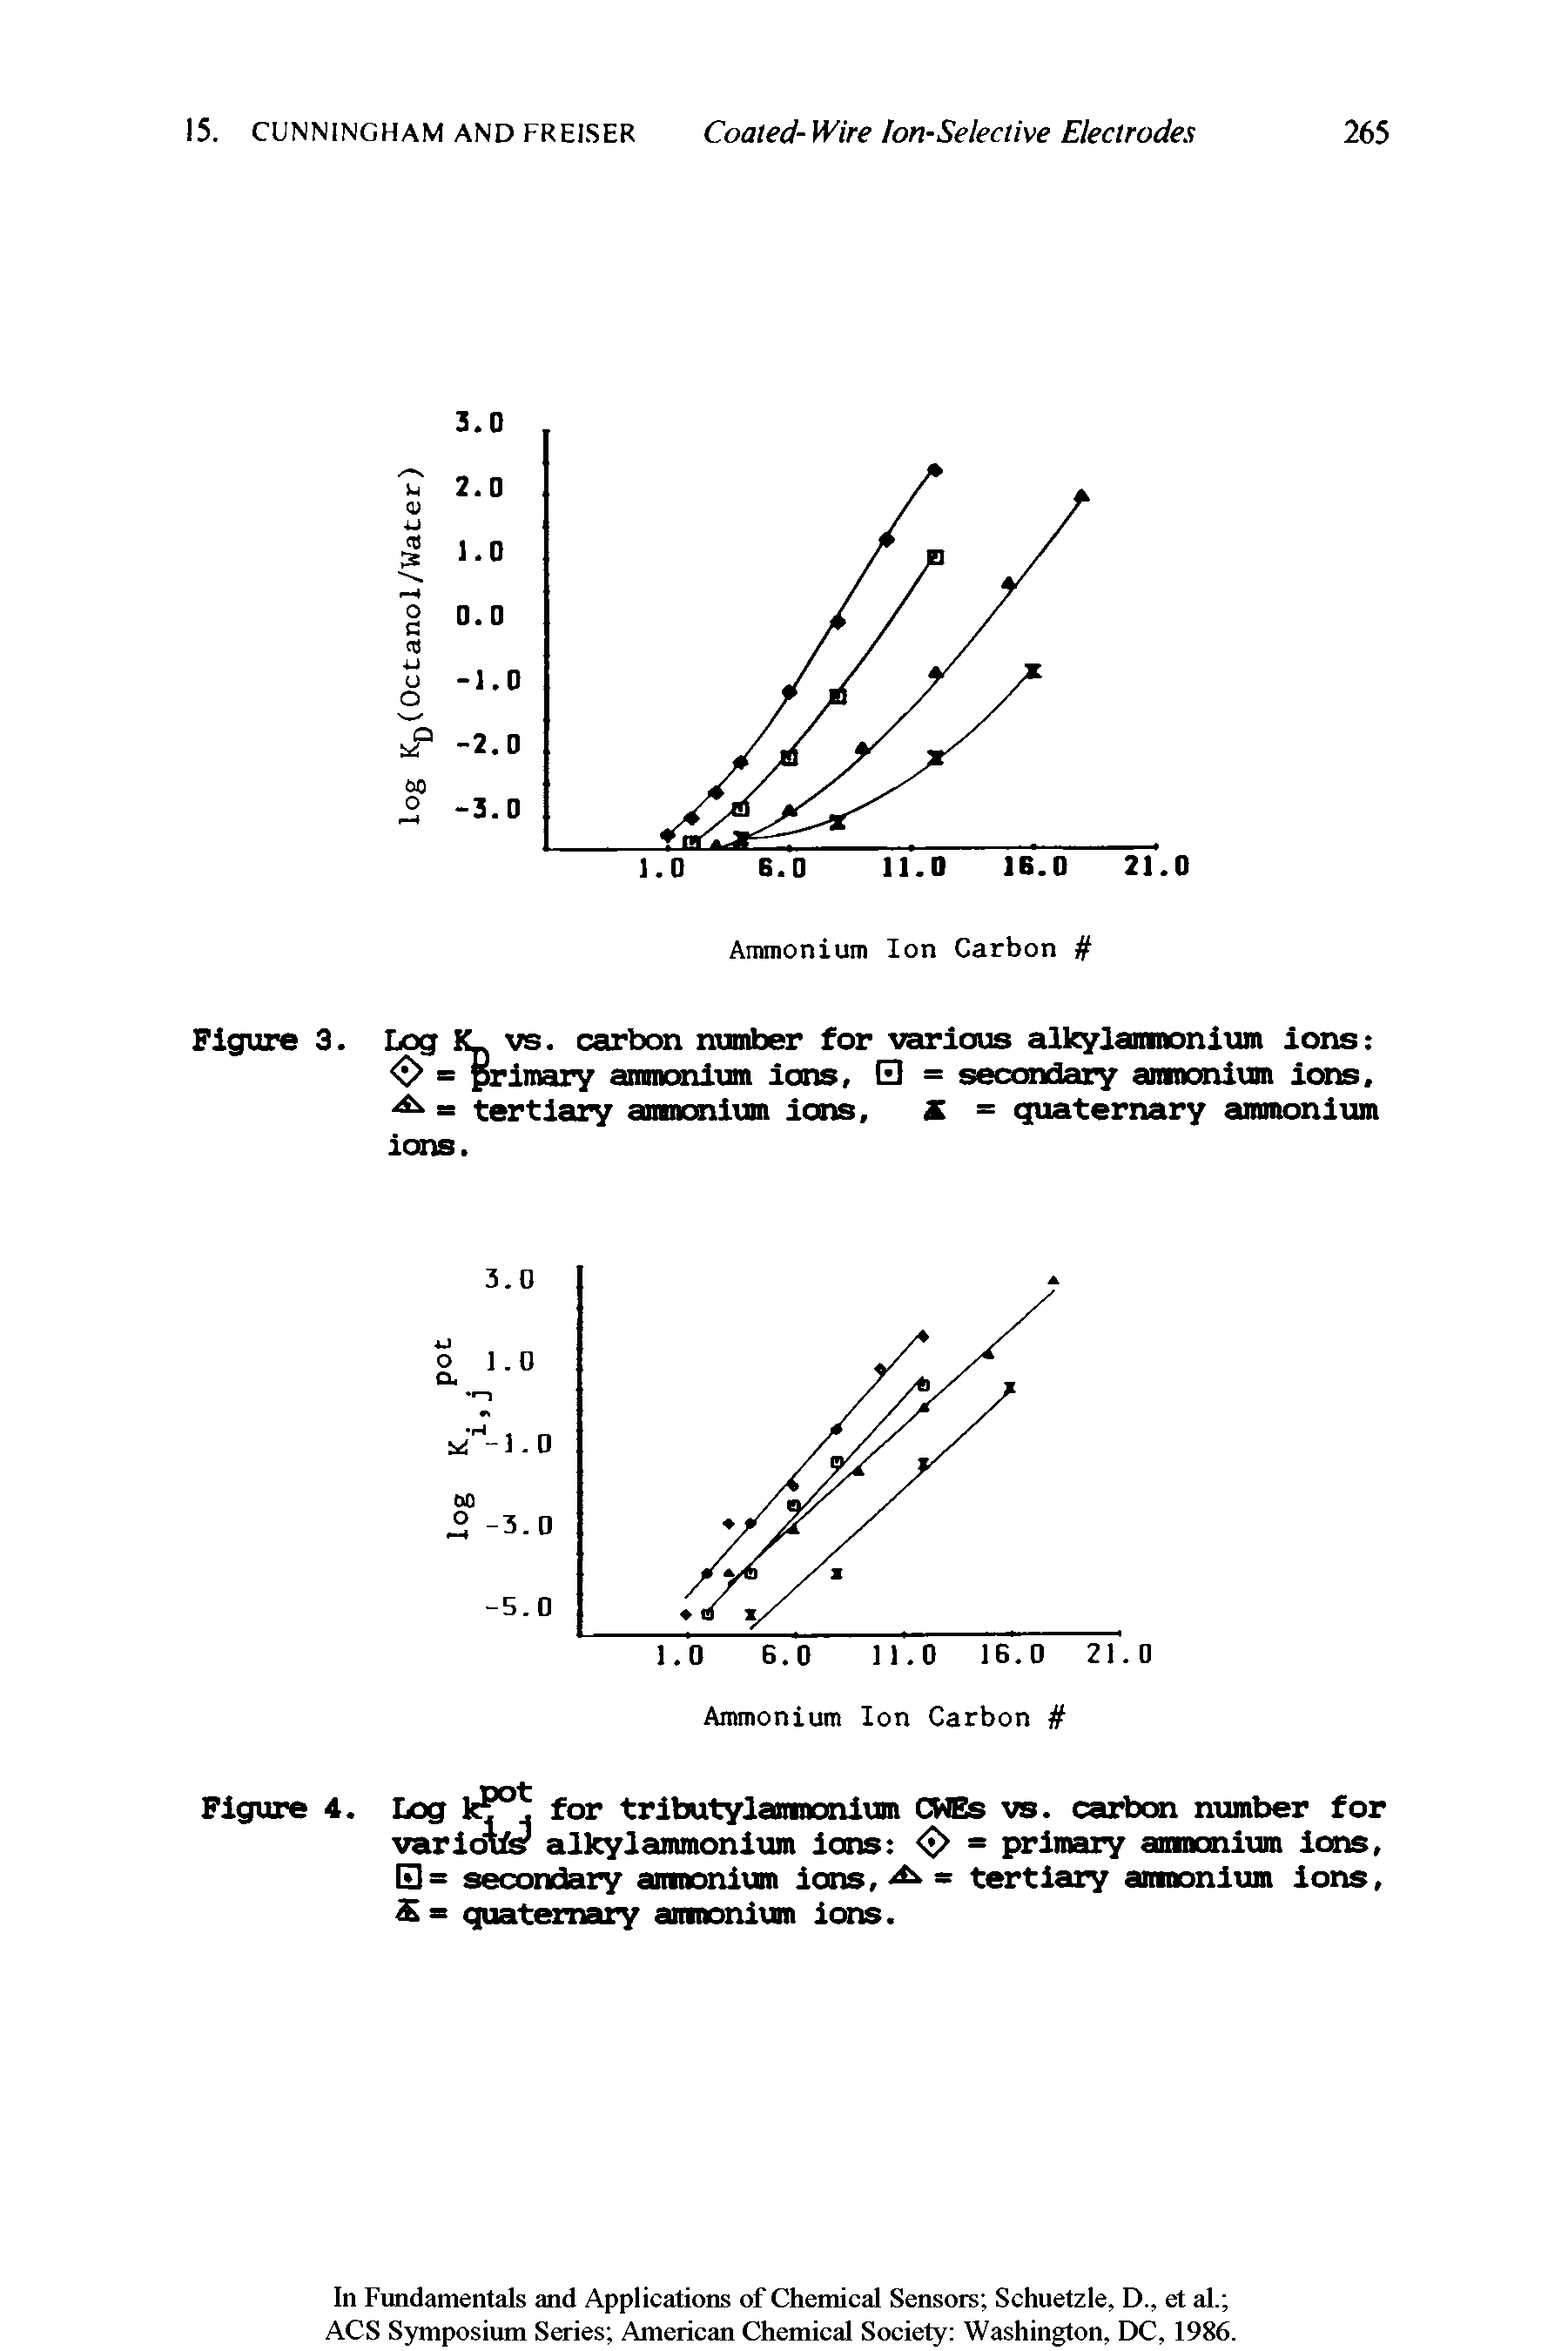 Figure 3. Log K vs. carbon number for various alkylamnonium ions < > = primary ammonium ions, = secraidary amnonium ions, = tertiary ammonium ions, X = quaternary ammonium ions.